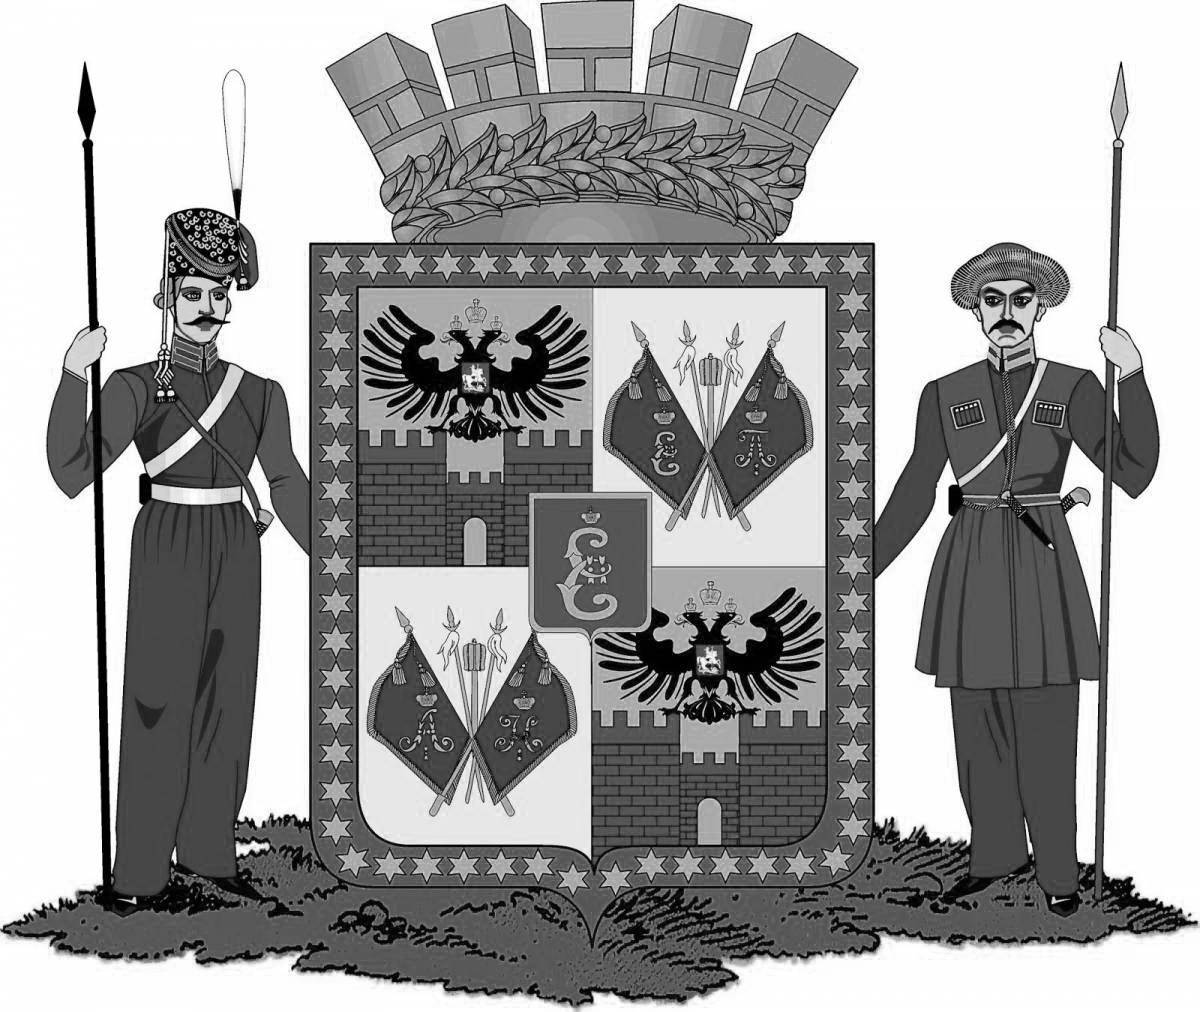 Festive flag of krasnodar